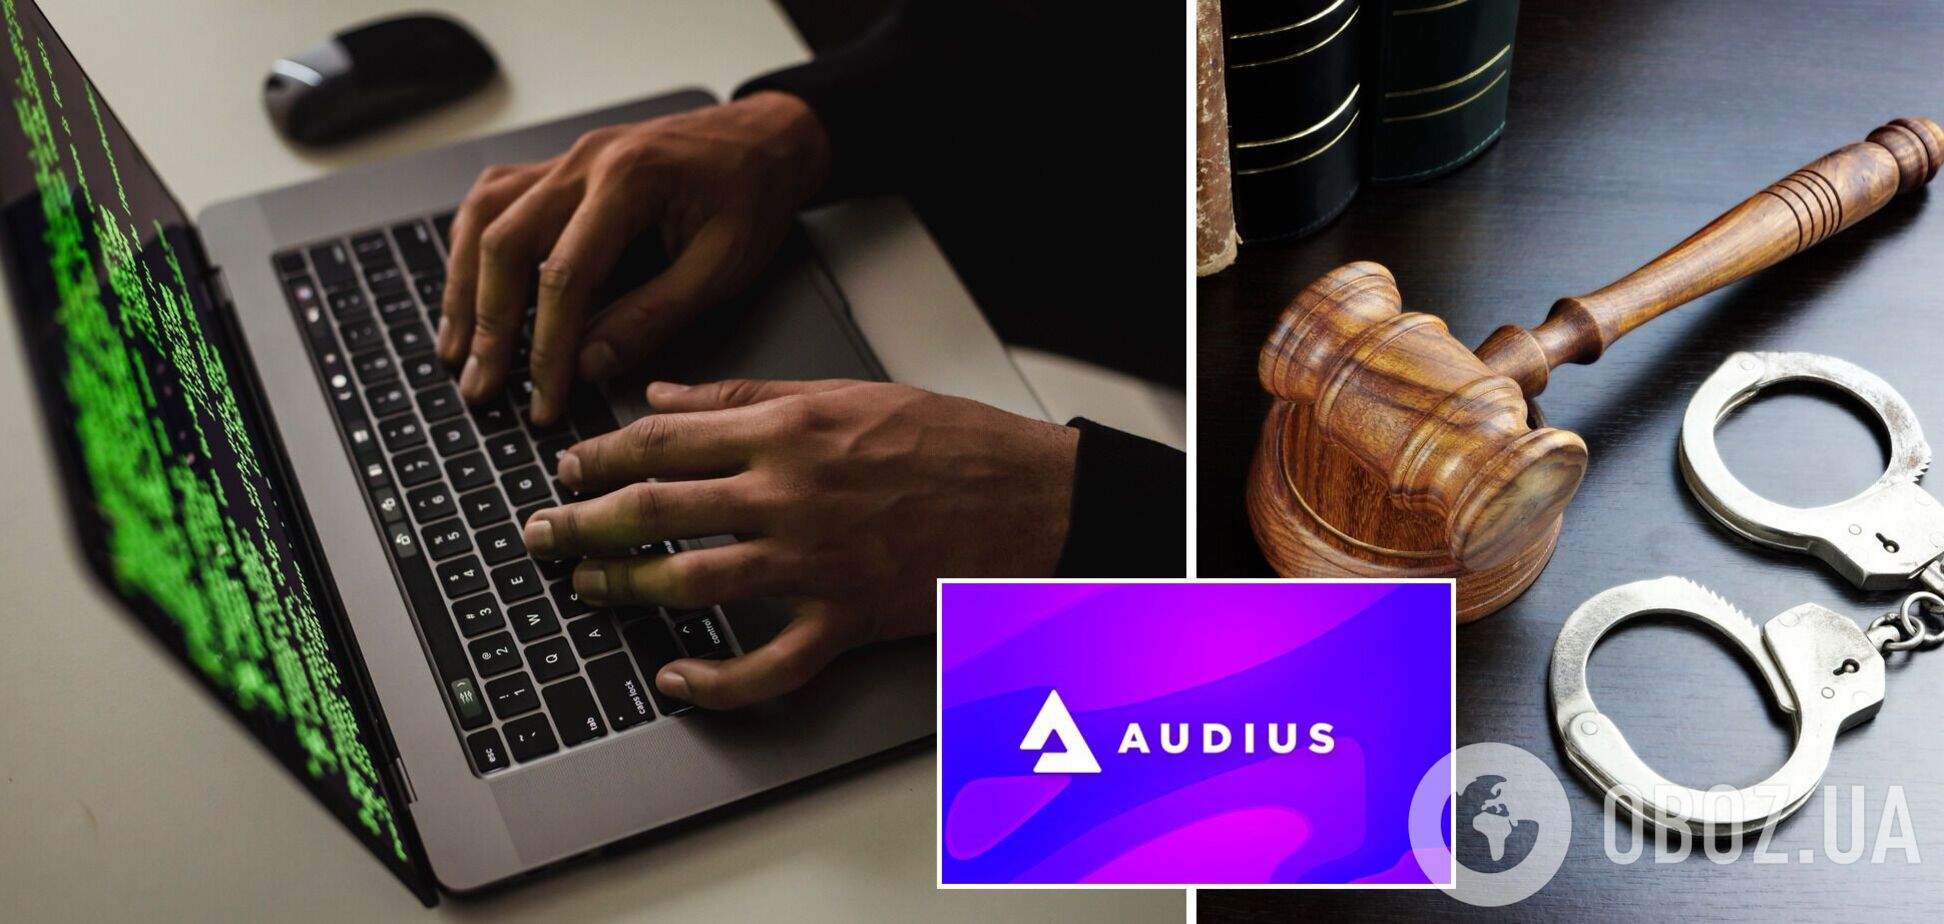 Популярная стриминговая платформа Audius подверглась кибератаке